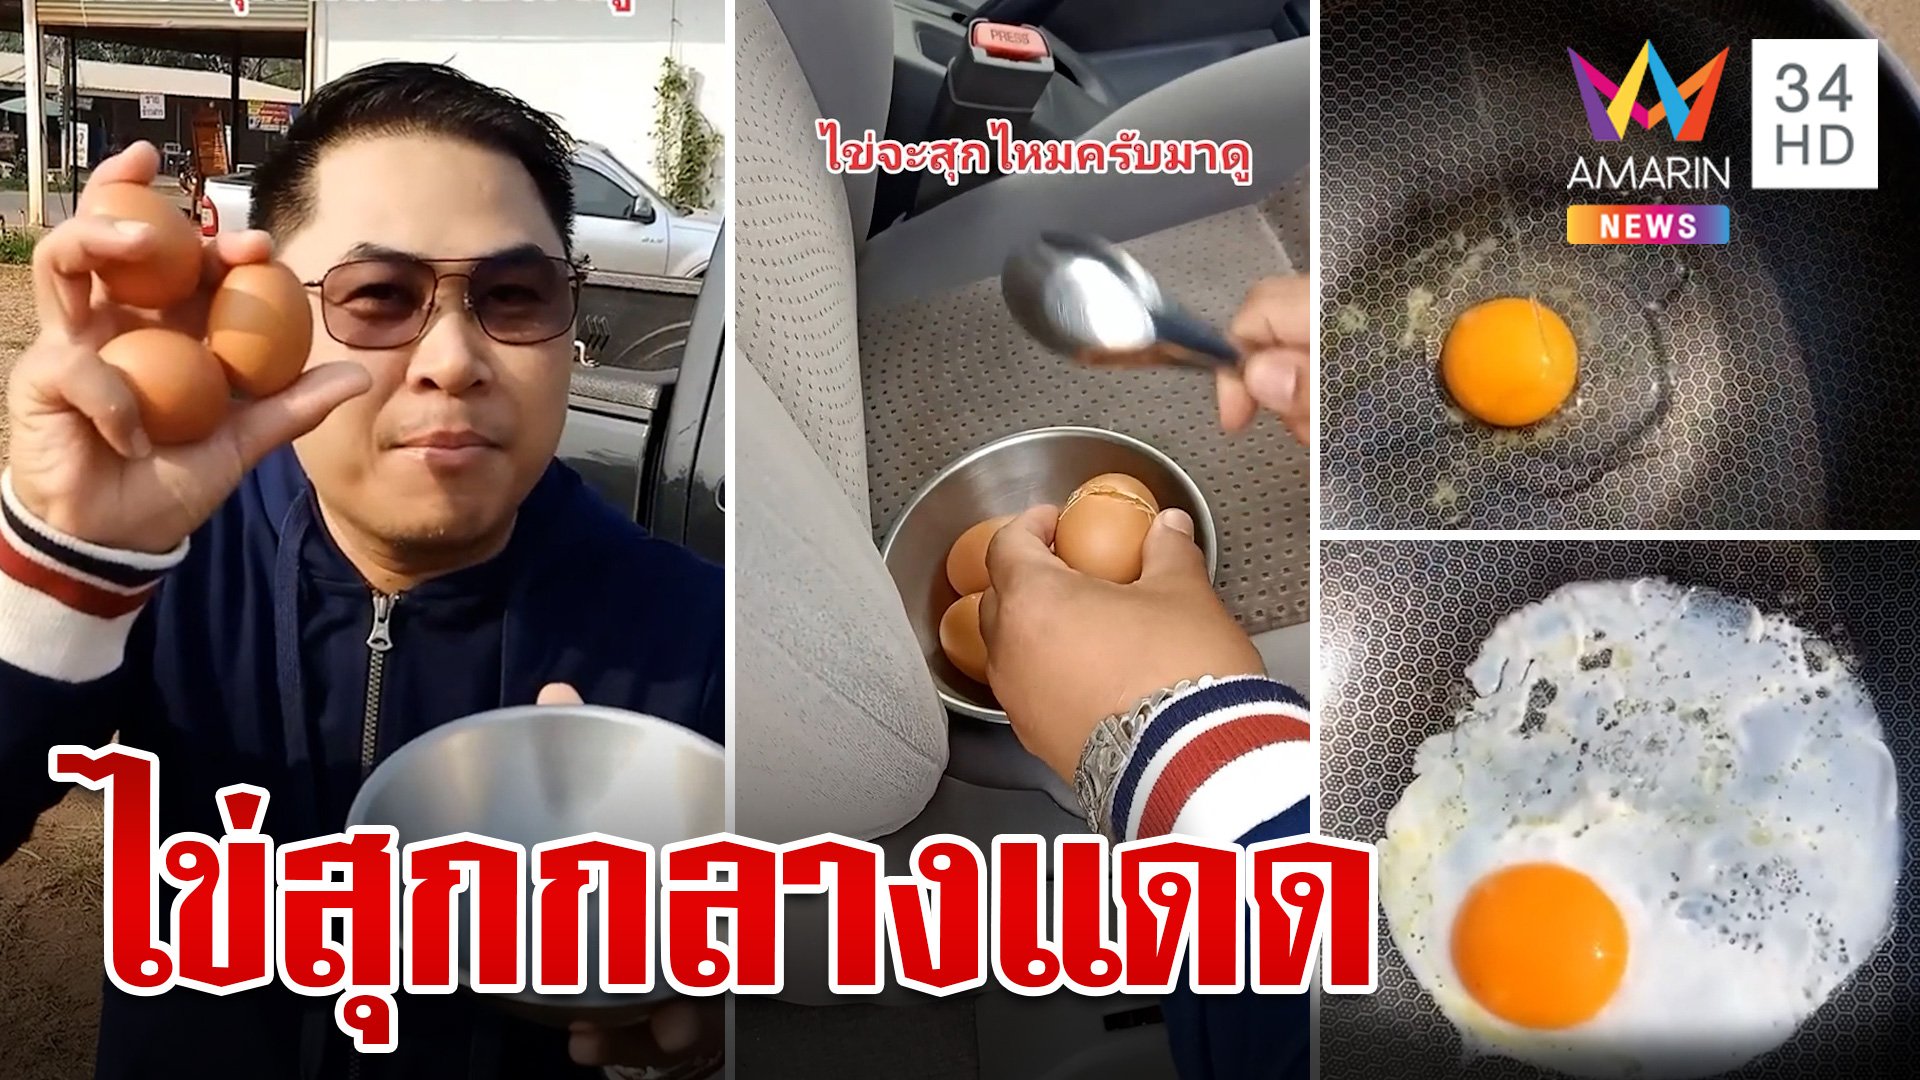 อากาศเมืองไทย ร้อนจนทอดไข่กลางแดดสุก | ทุบโต๊ะข่าว | 25 มี.ค. 66 | AMARIN TVHD34